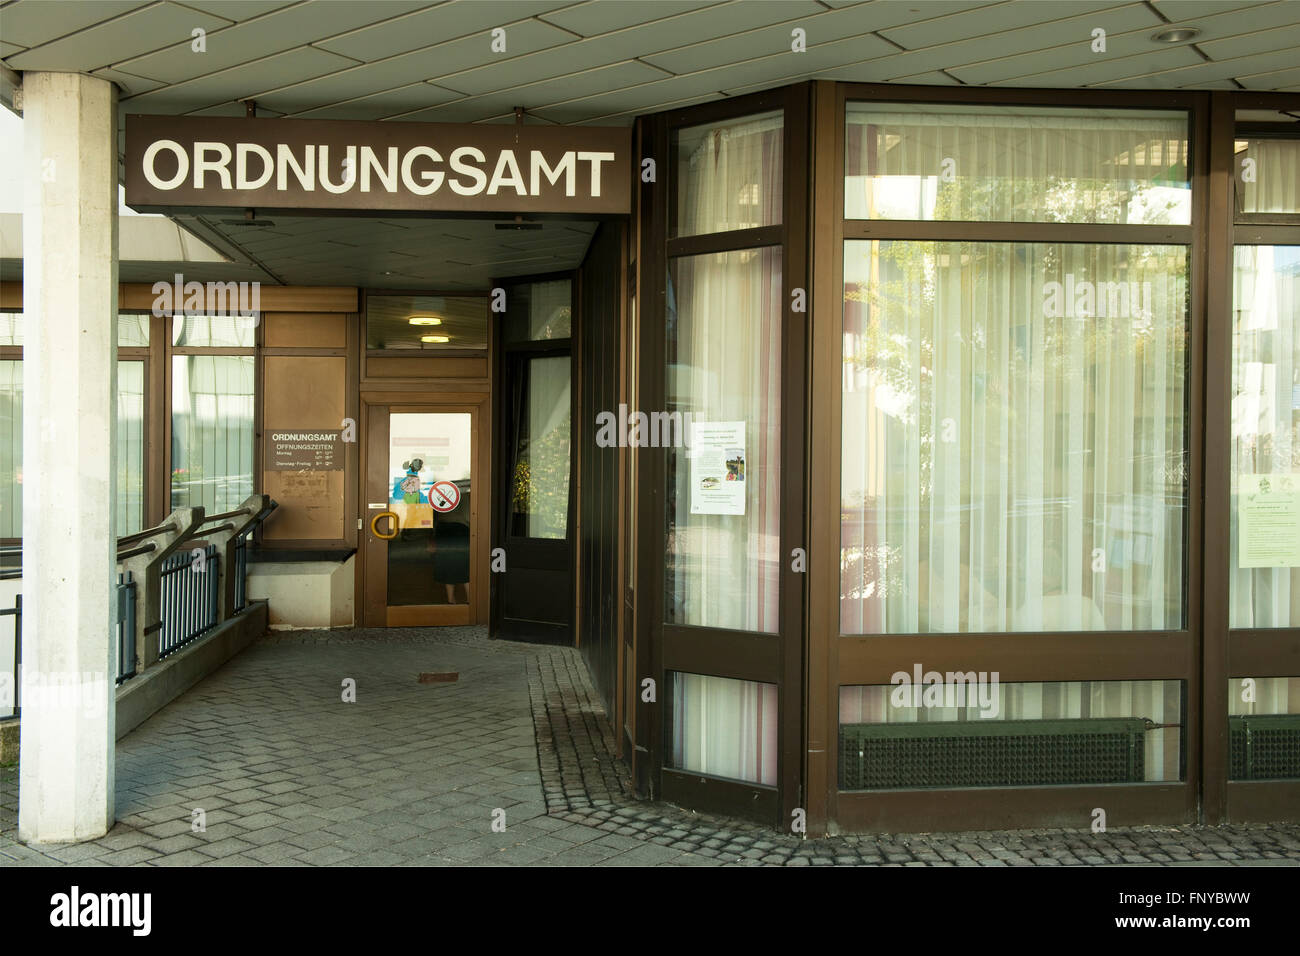 Deutschland, Nordrhein-Westfalen, Rhein-Sieg-Kreis, Sankt Augustin, Rathaus, Ordnungsamt Stock Photo